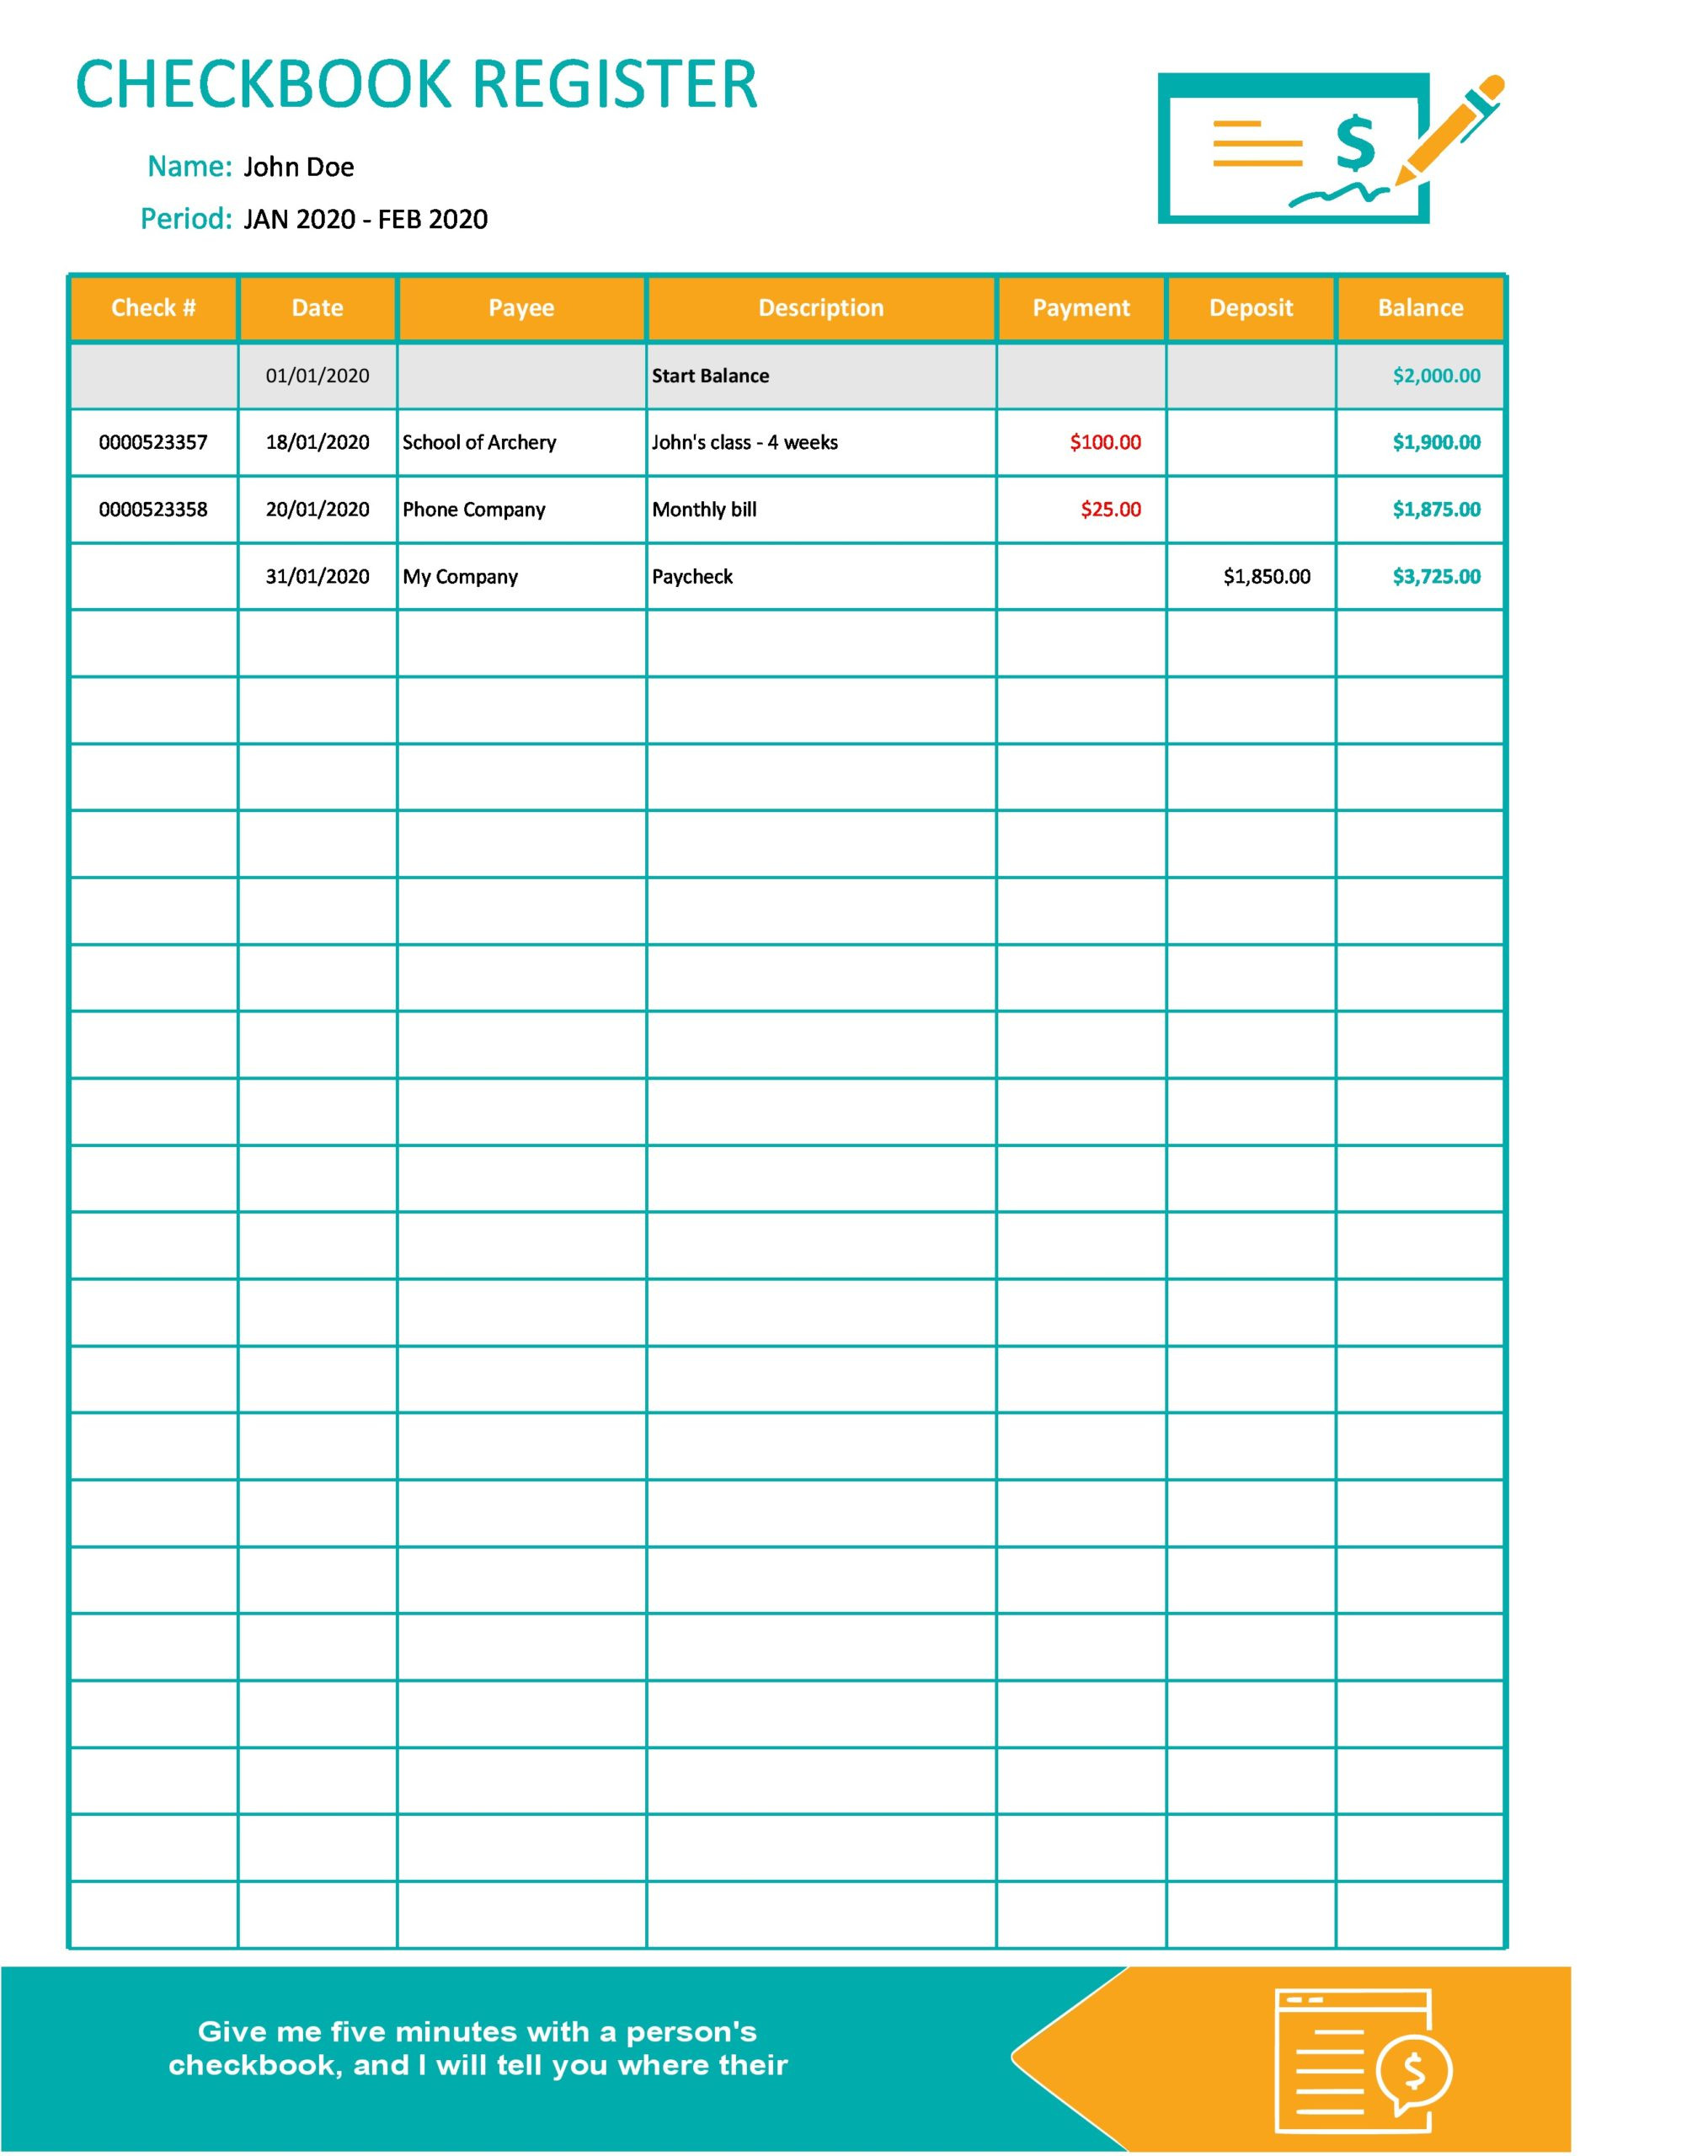 Excel Checkbook Register Budget Worksheet 39 Checkbook Register Templates [ Free Printable]